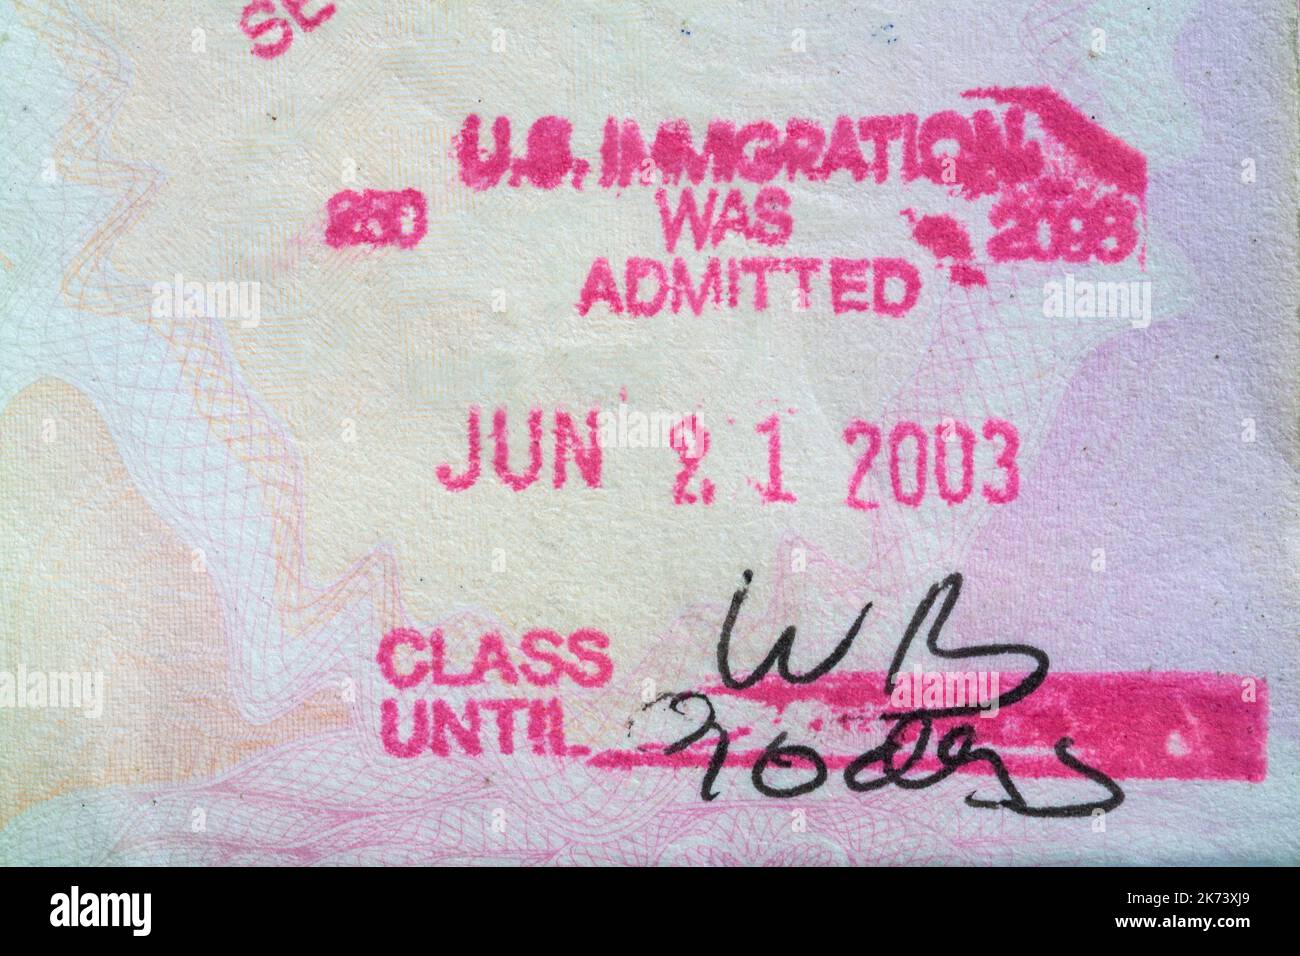 USA Immigration WAR Washington, DC zugelassen Juni 21 2003 - Stempel in britischen Pass Stockfoto